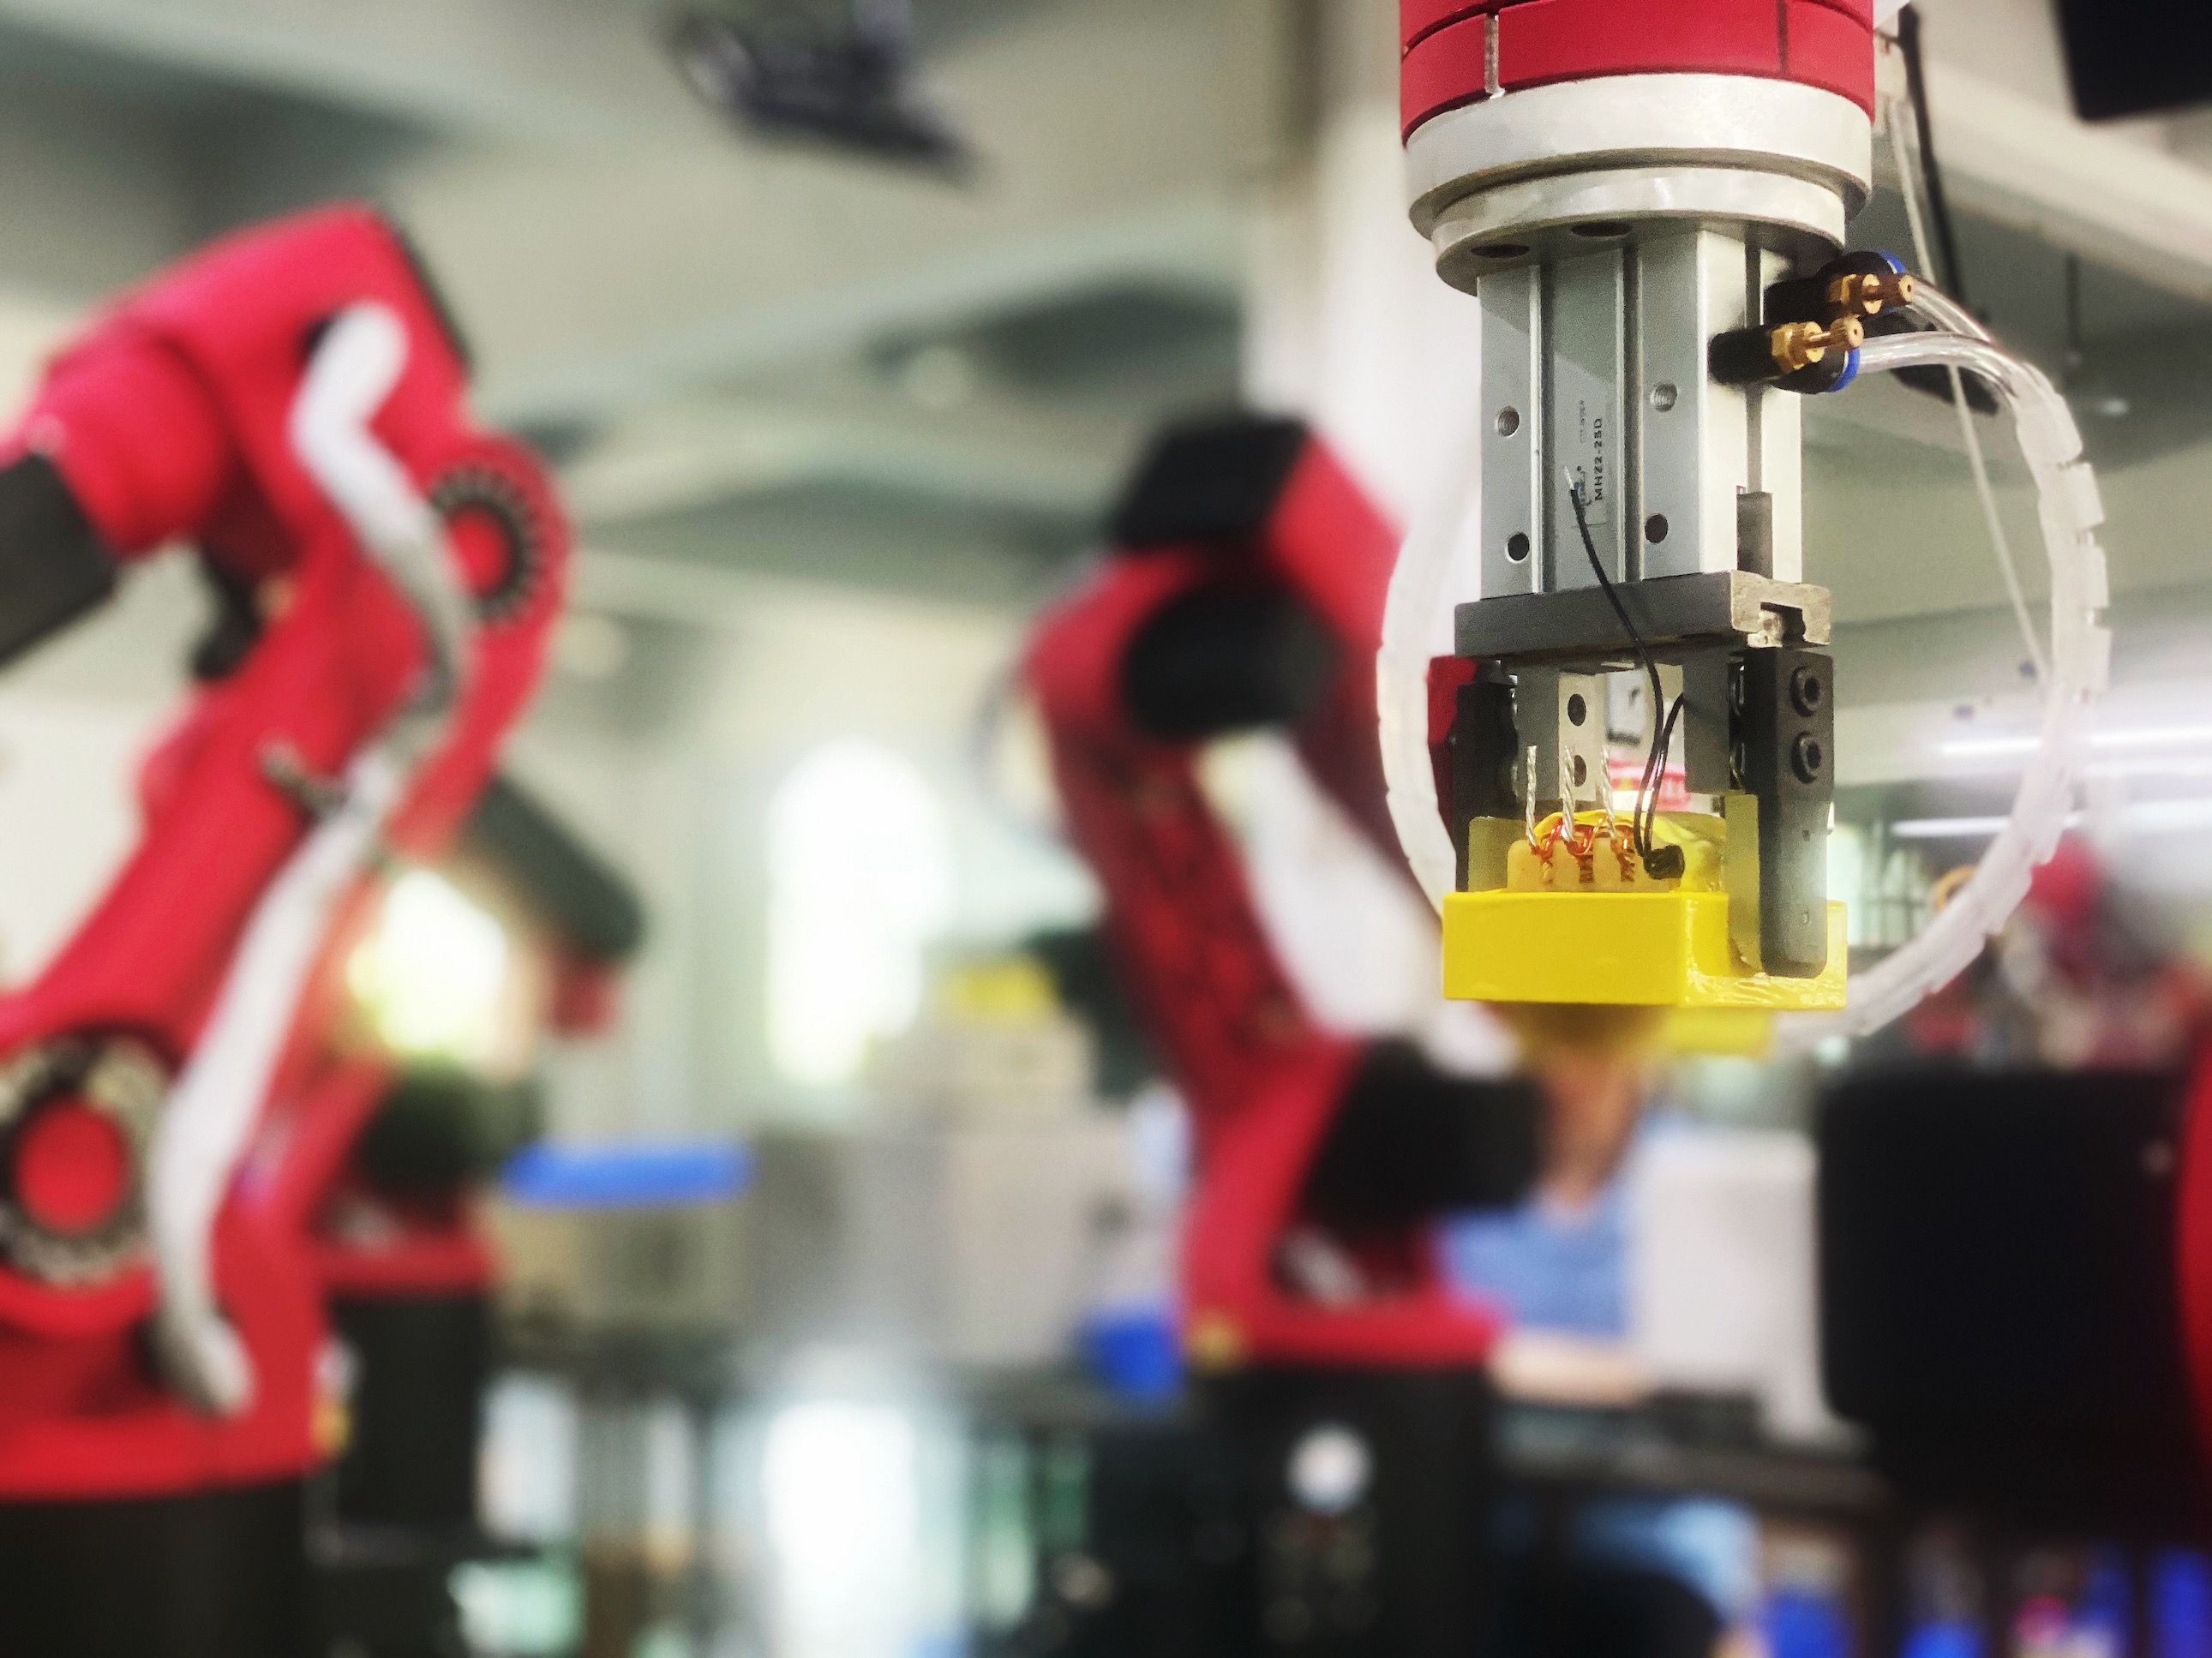 应用于高频变压器的首条工业机器人生产线在瑞格精密投入生产